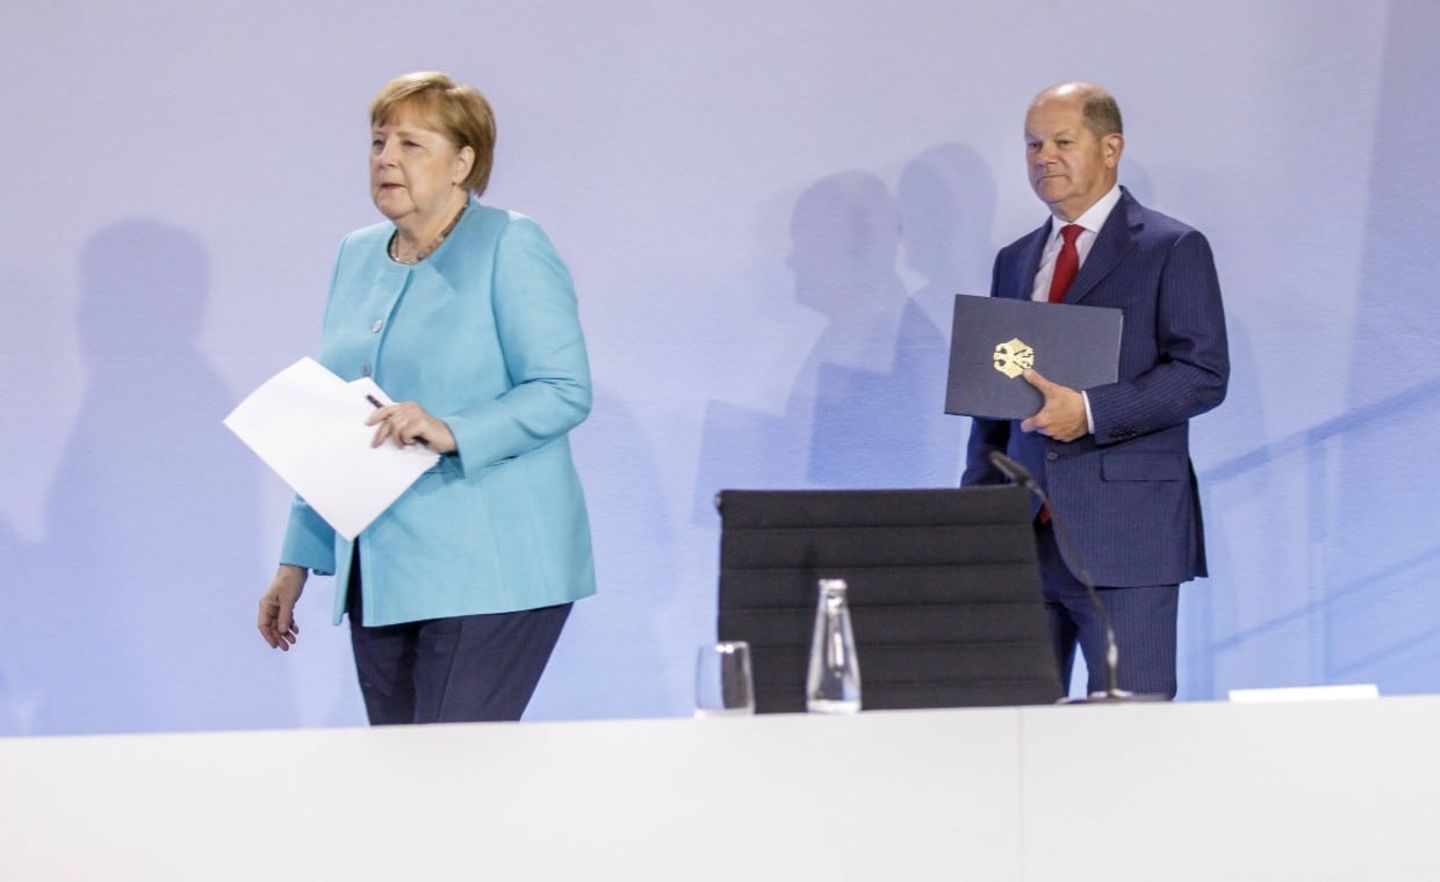 Kanzlerin Merkel und Finanzminister Scholz schreiten zur Verkündung: Die Koalition hat sich auf ein 130 Mrd. Euro umfassendes Konjunkturpaket verständigt